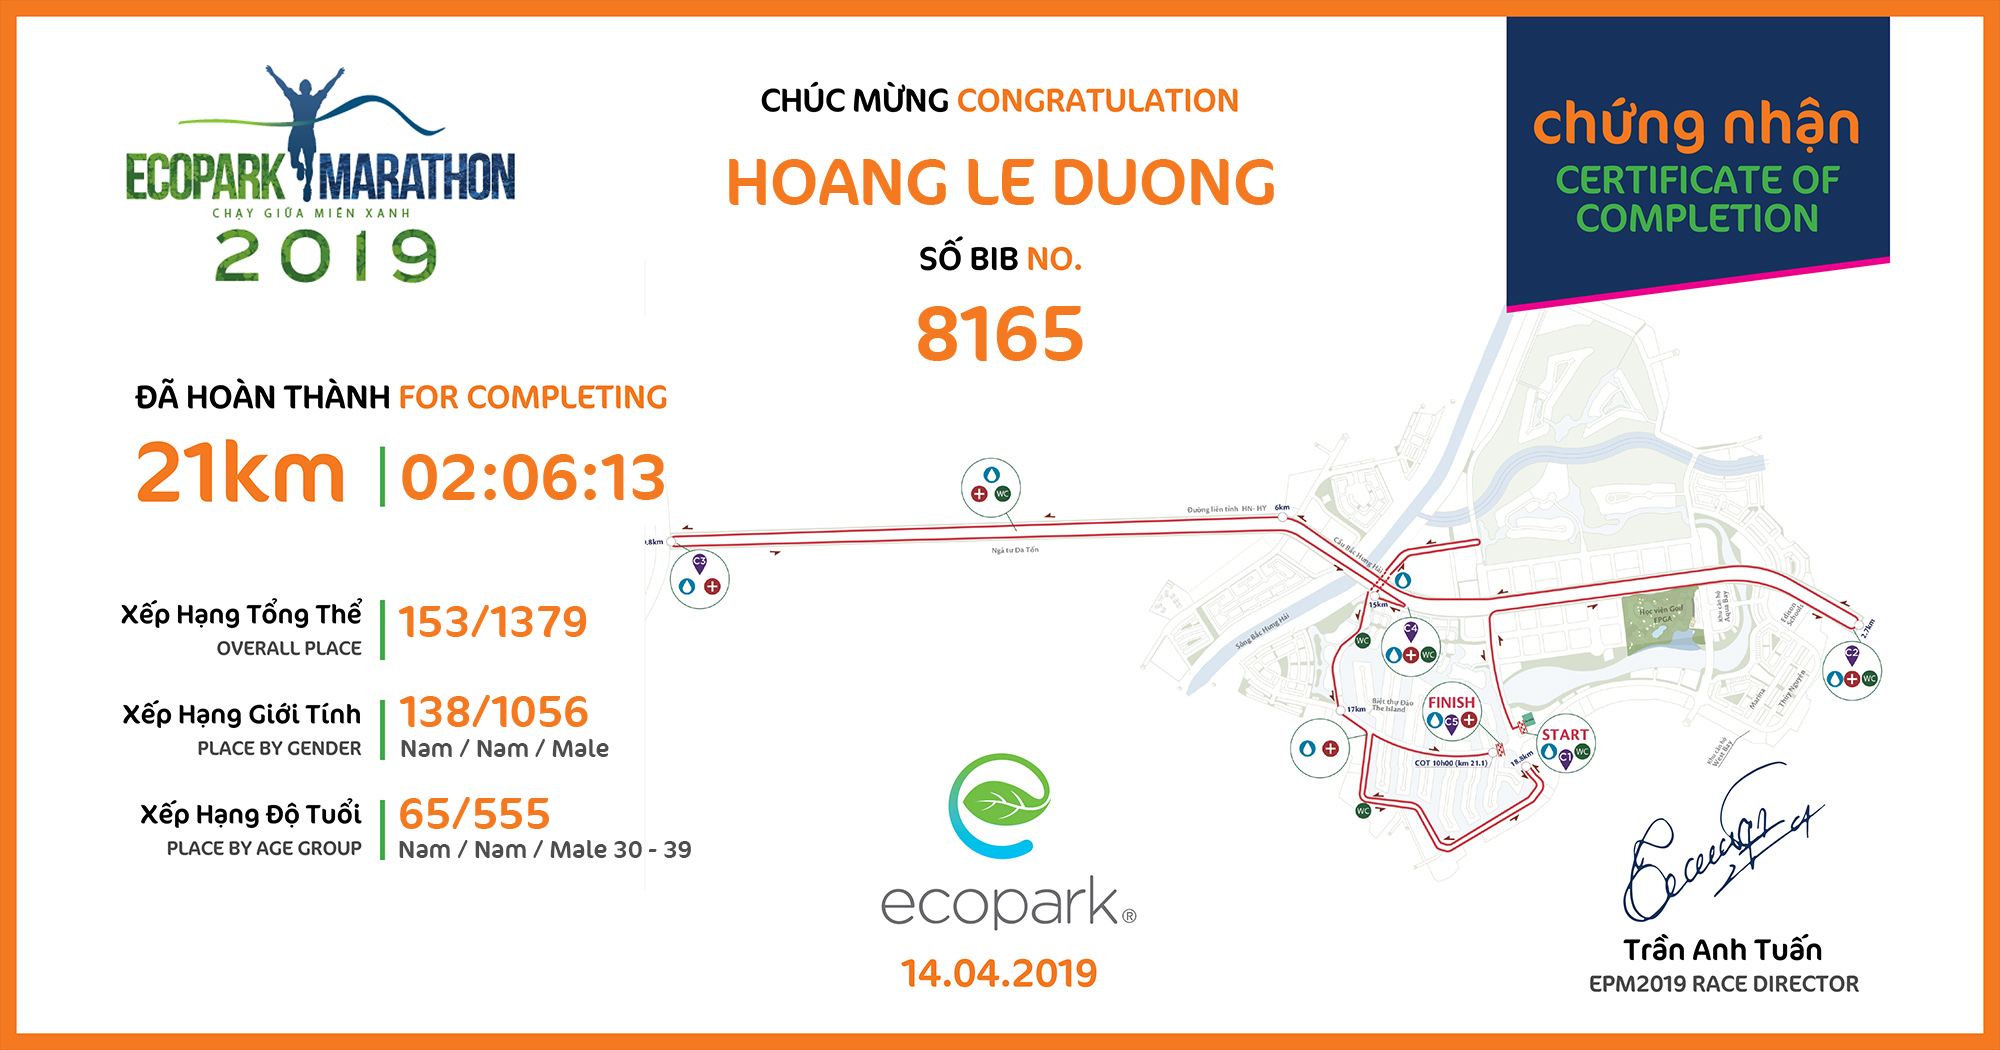 8165 - Hoang Le Duong